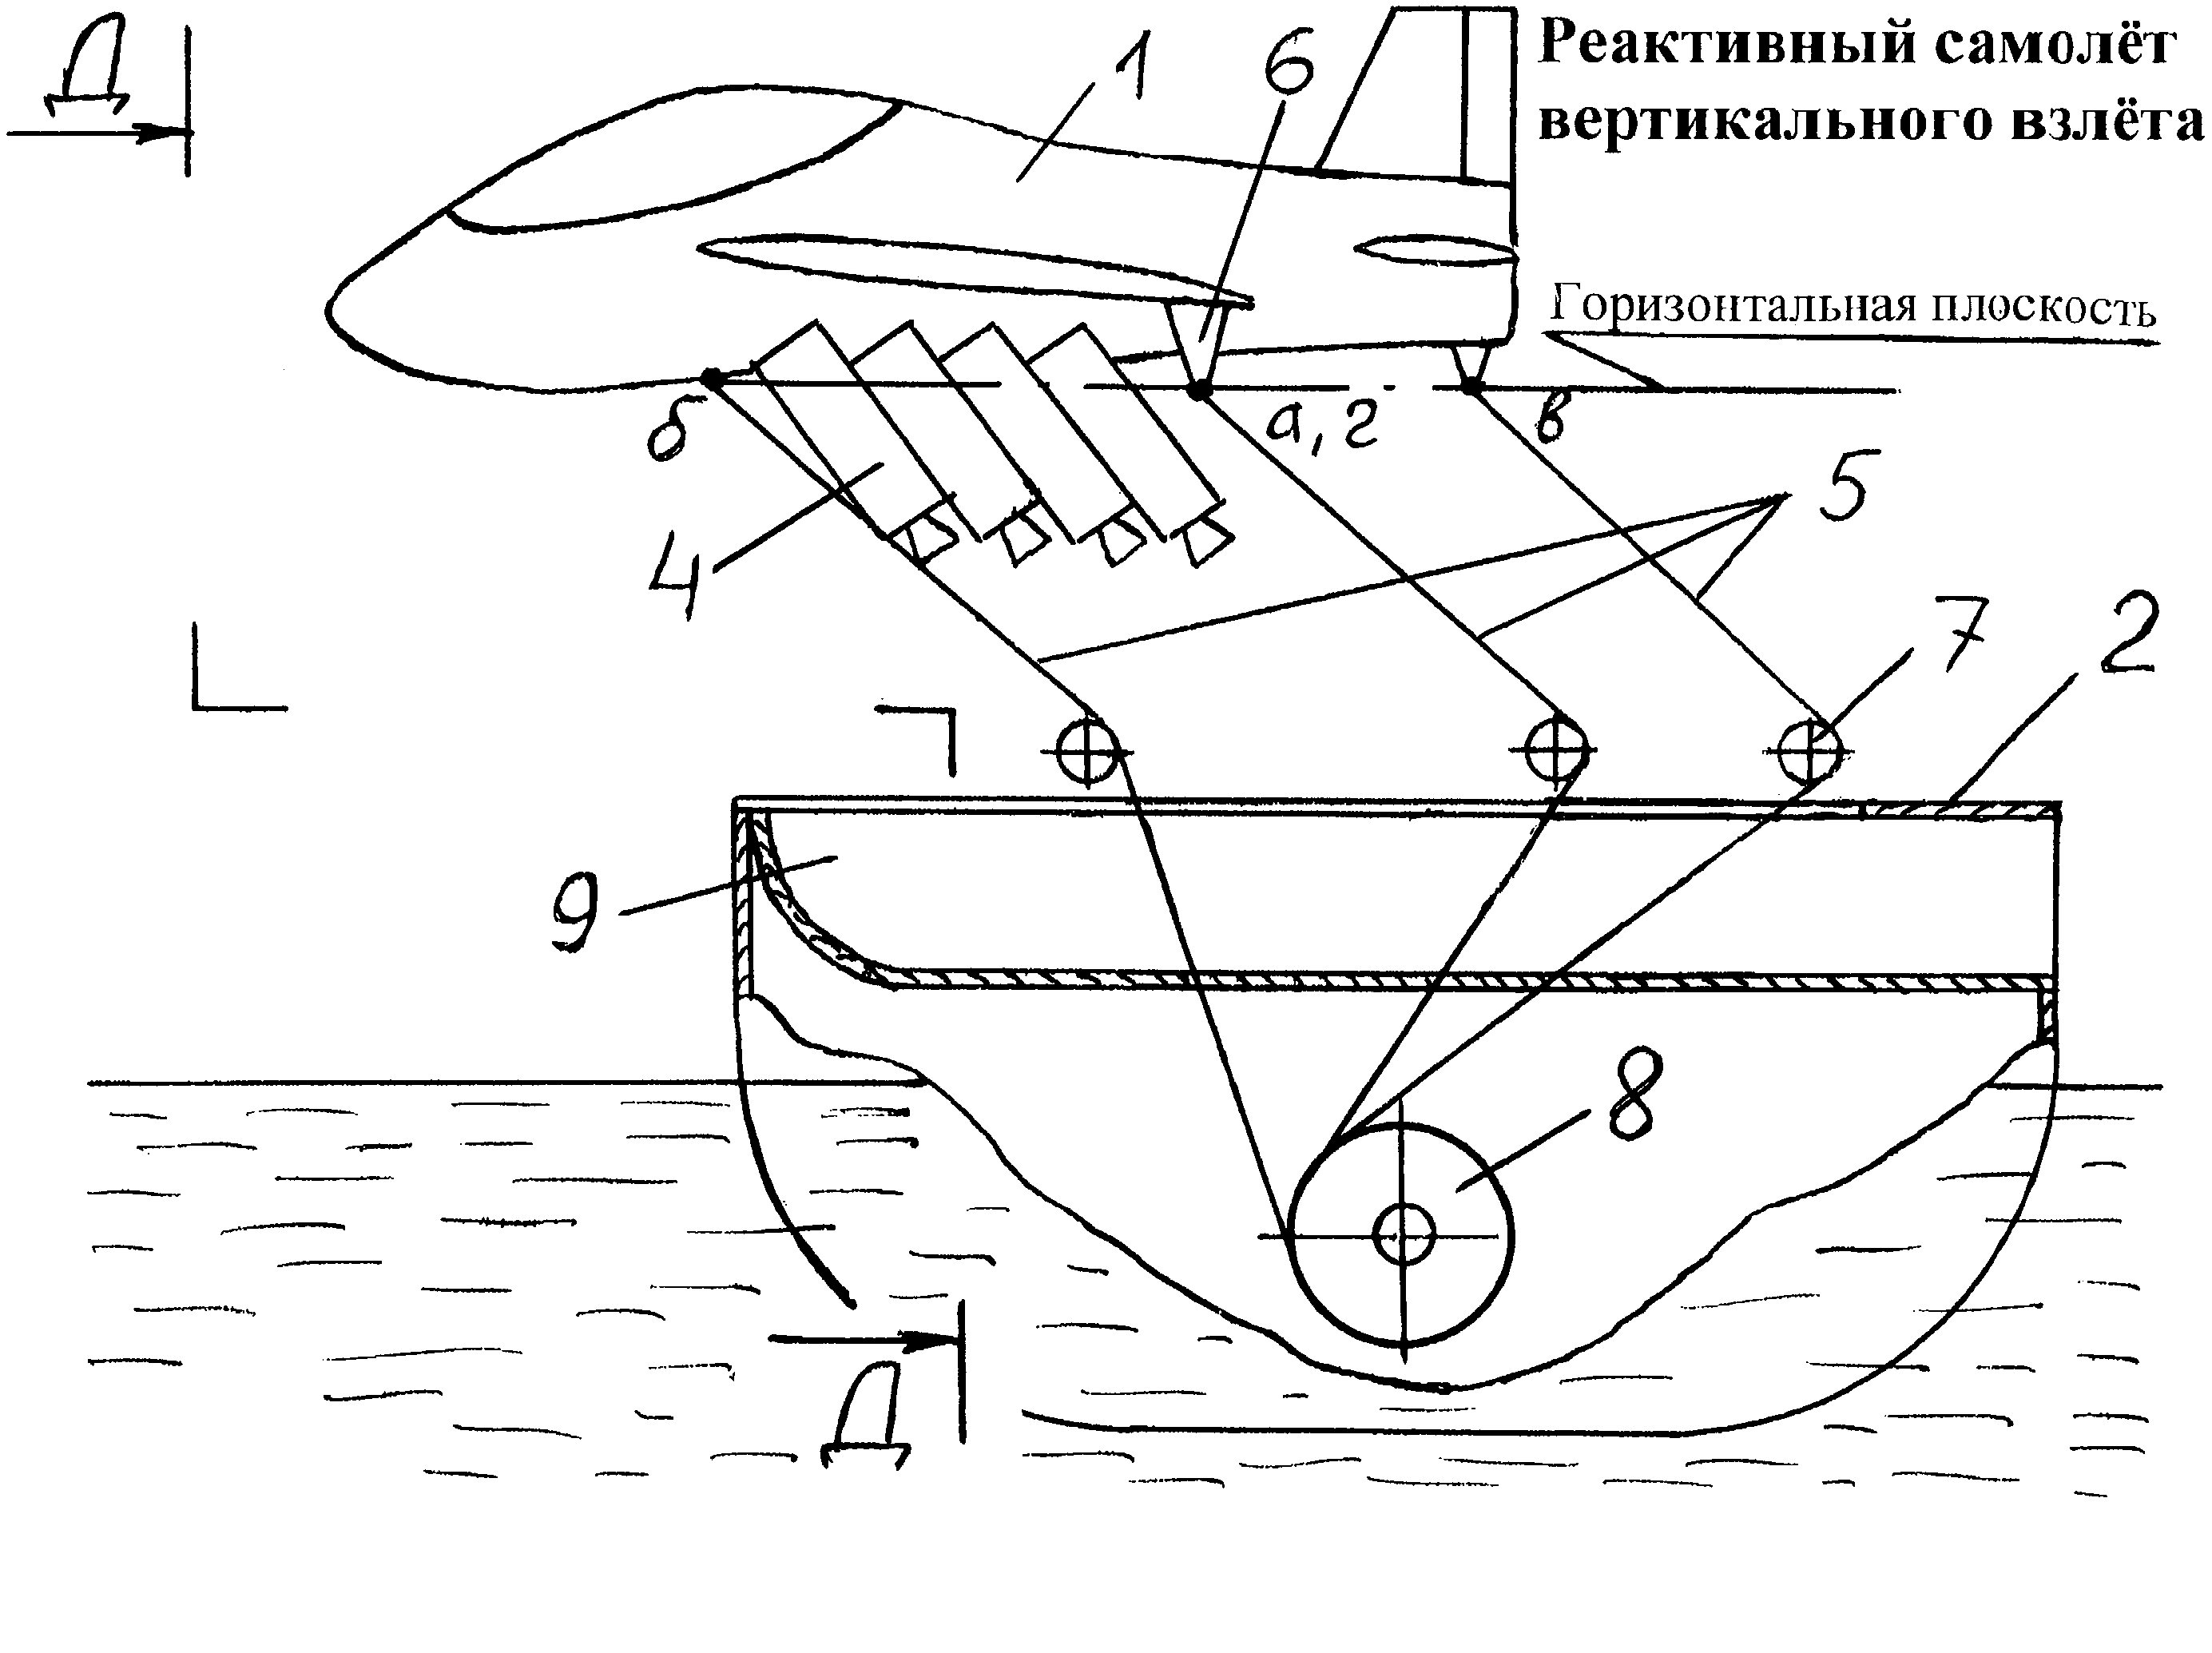 Система для осуществления вертикального взлета реактивного самолета